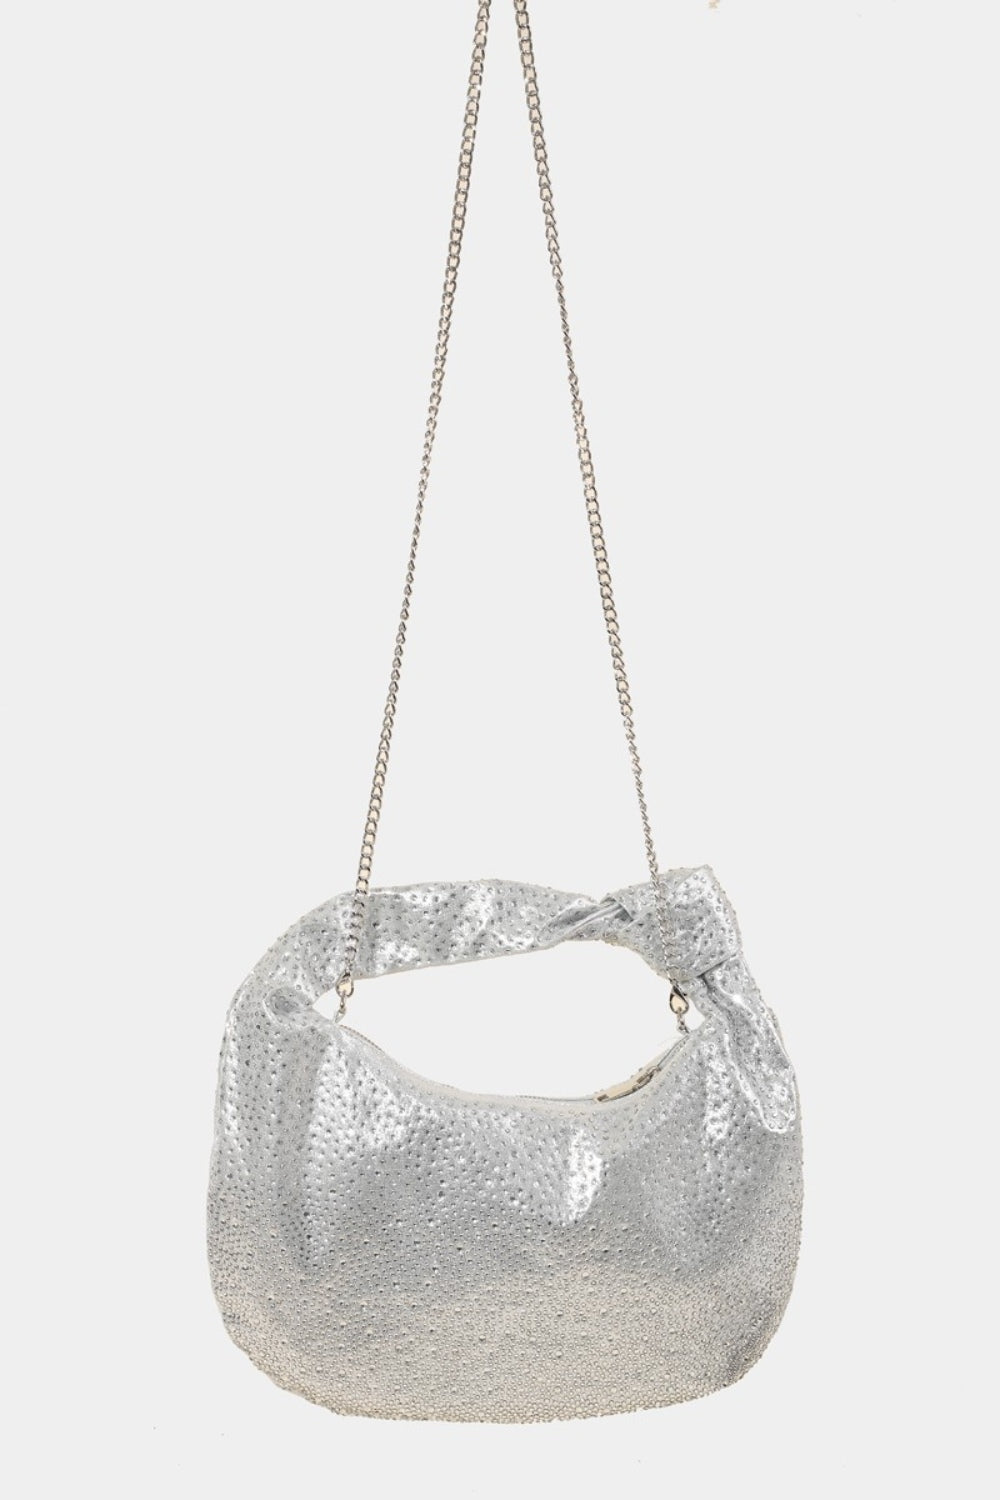 TEEK - Rhinestone Studded Handbag BAG TEEK Trend   